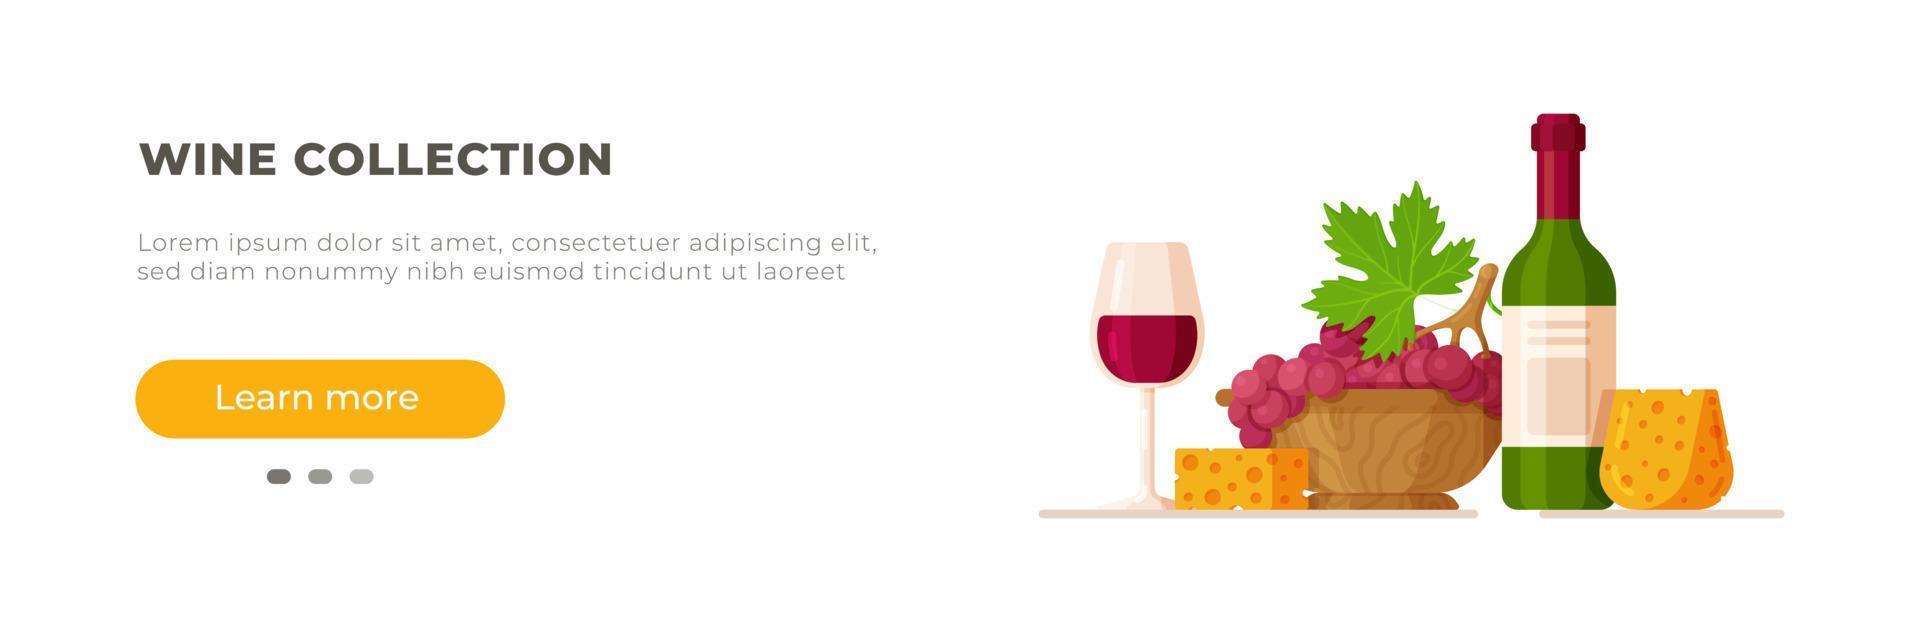 una botella de vino y una copa de vino tinto. ilustración vectorial de estilo plano sobre fondo blanco. vector